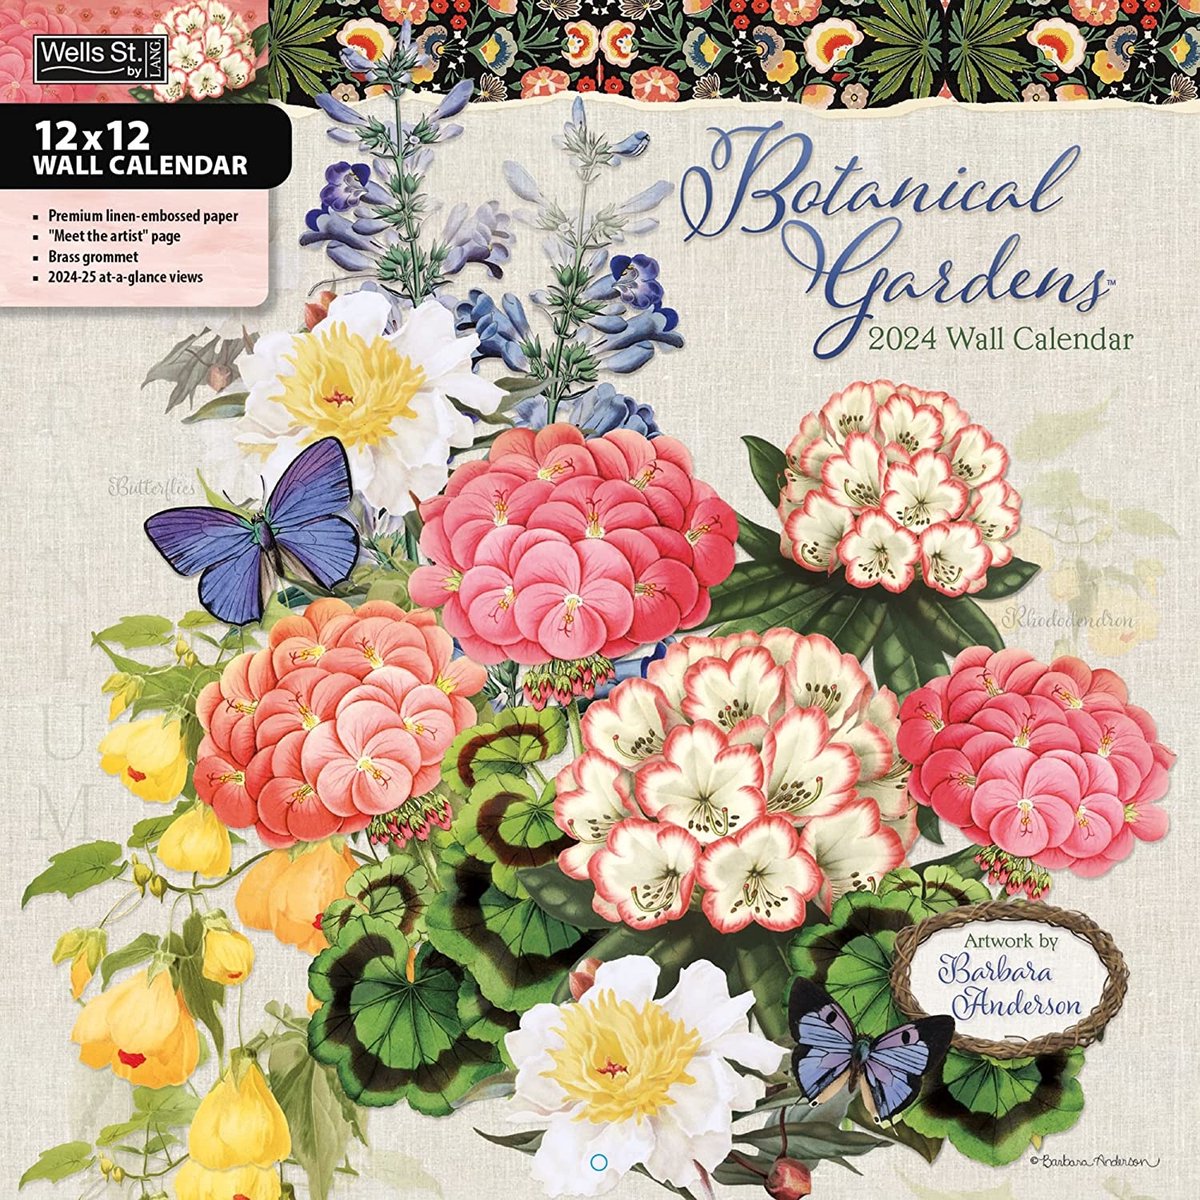 Botanical Gardens Kalender 2024